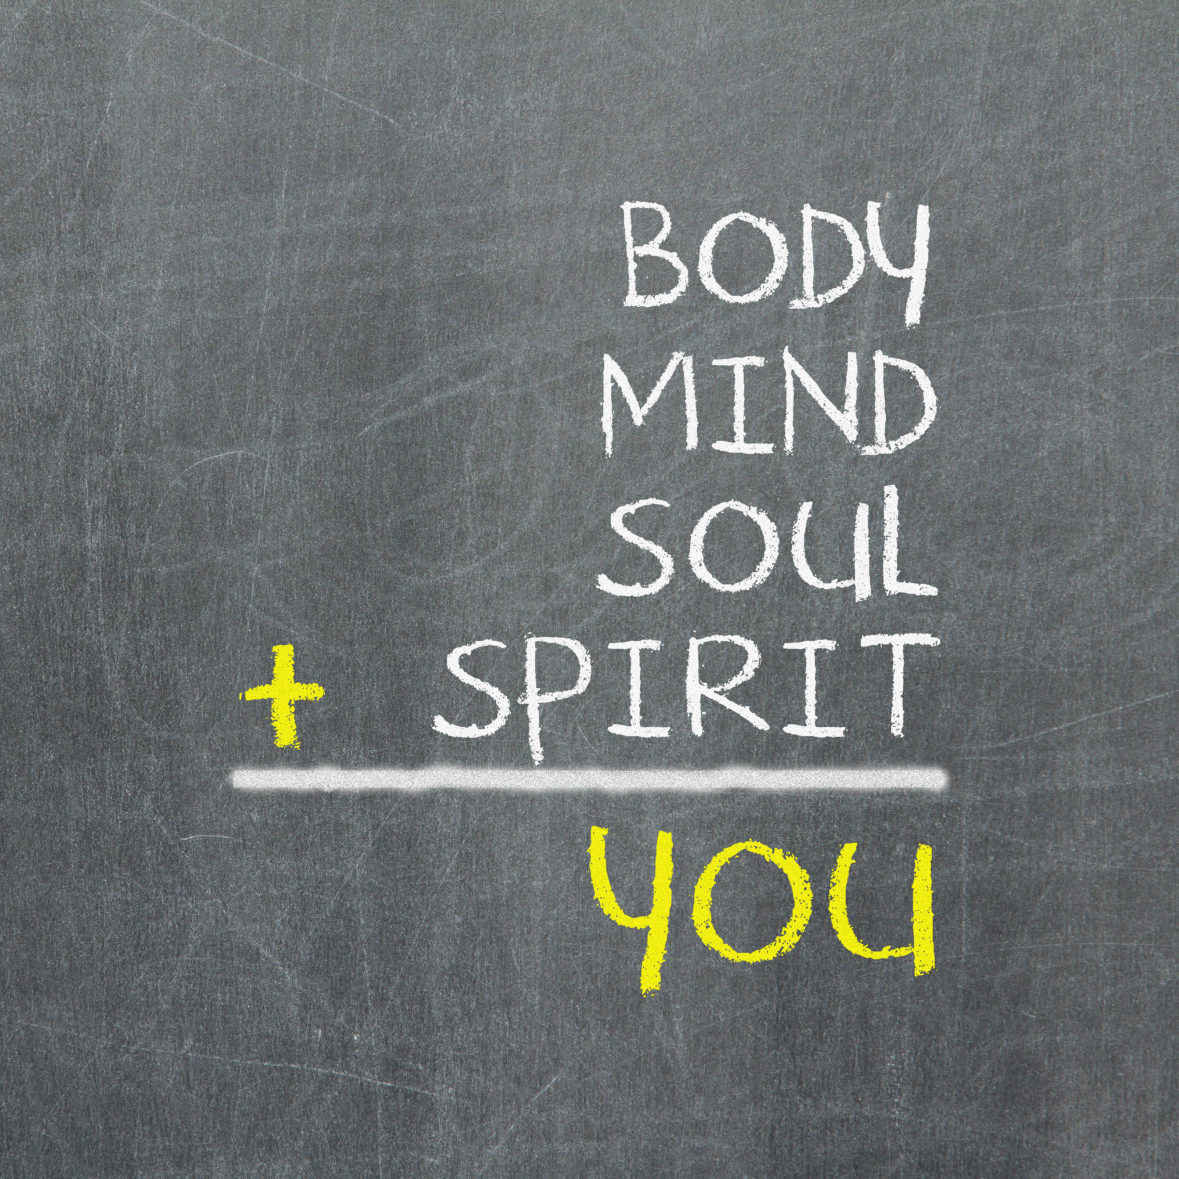 body mind spirit soul you